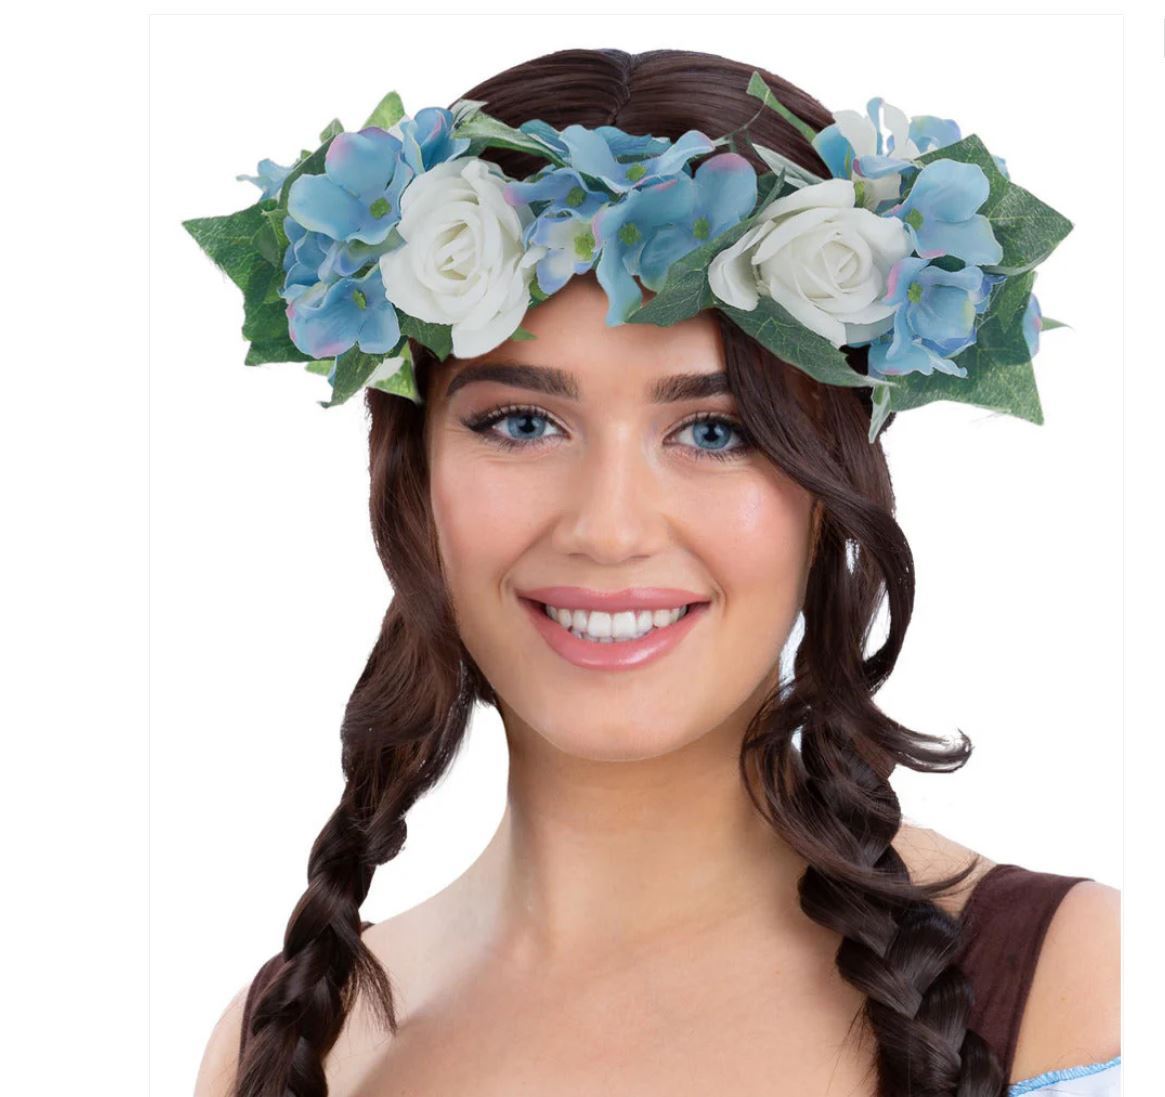 Headwear/Crown of Flowers Bavarian German Oktoberfest Deluxe Blue & White